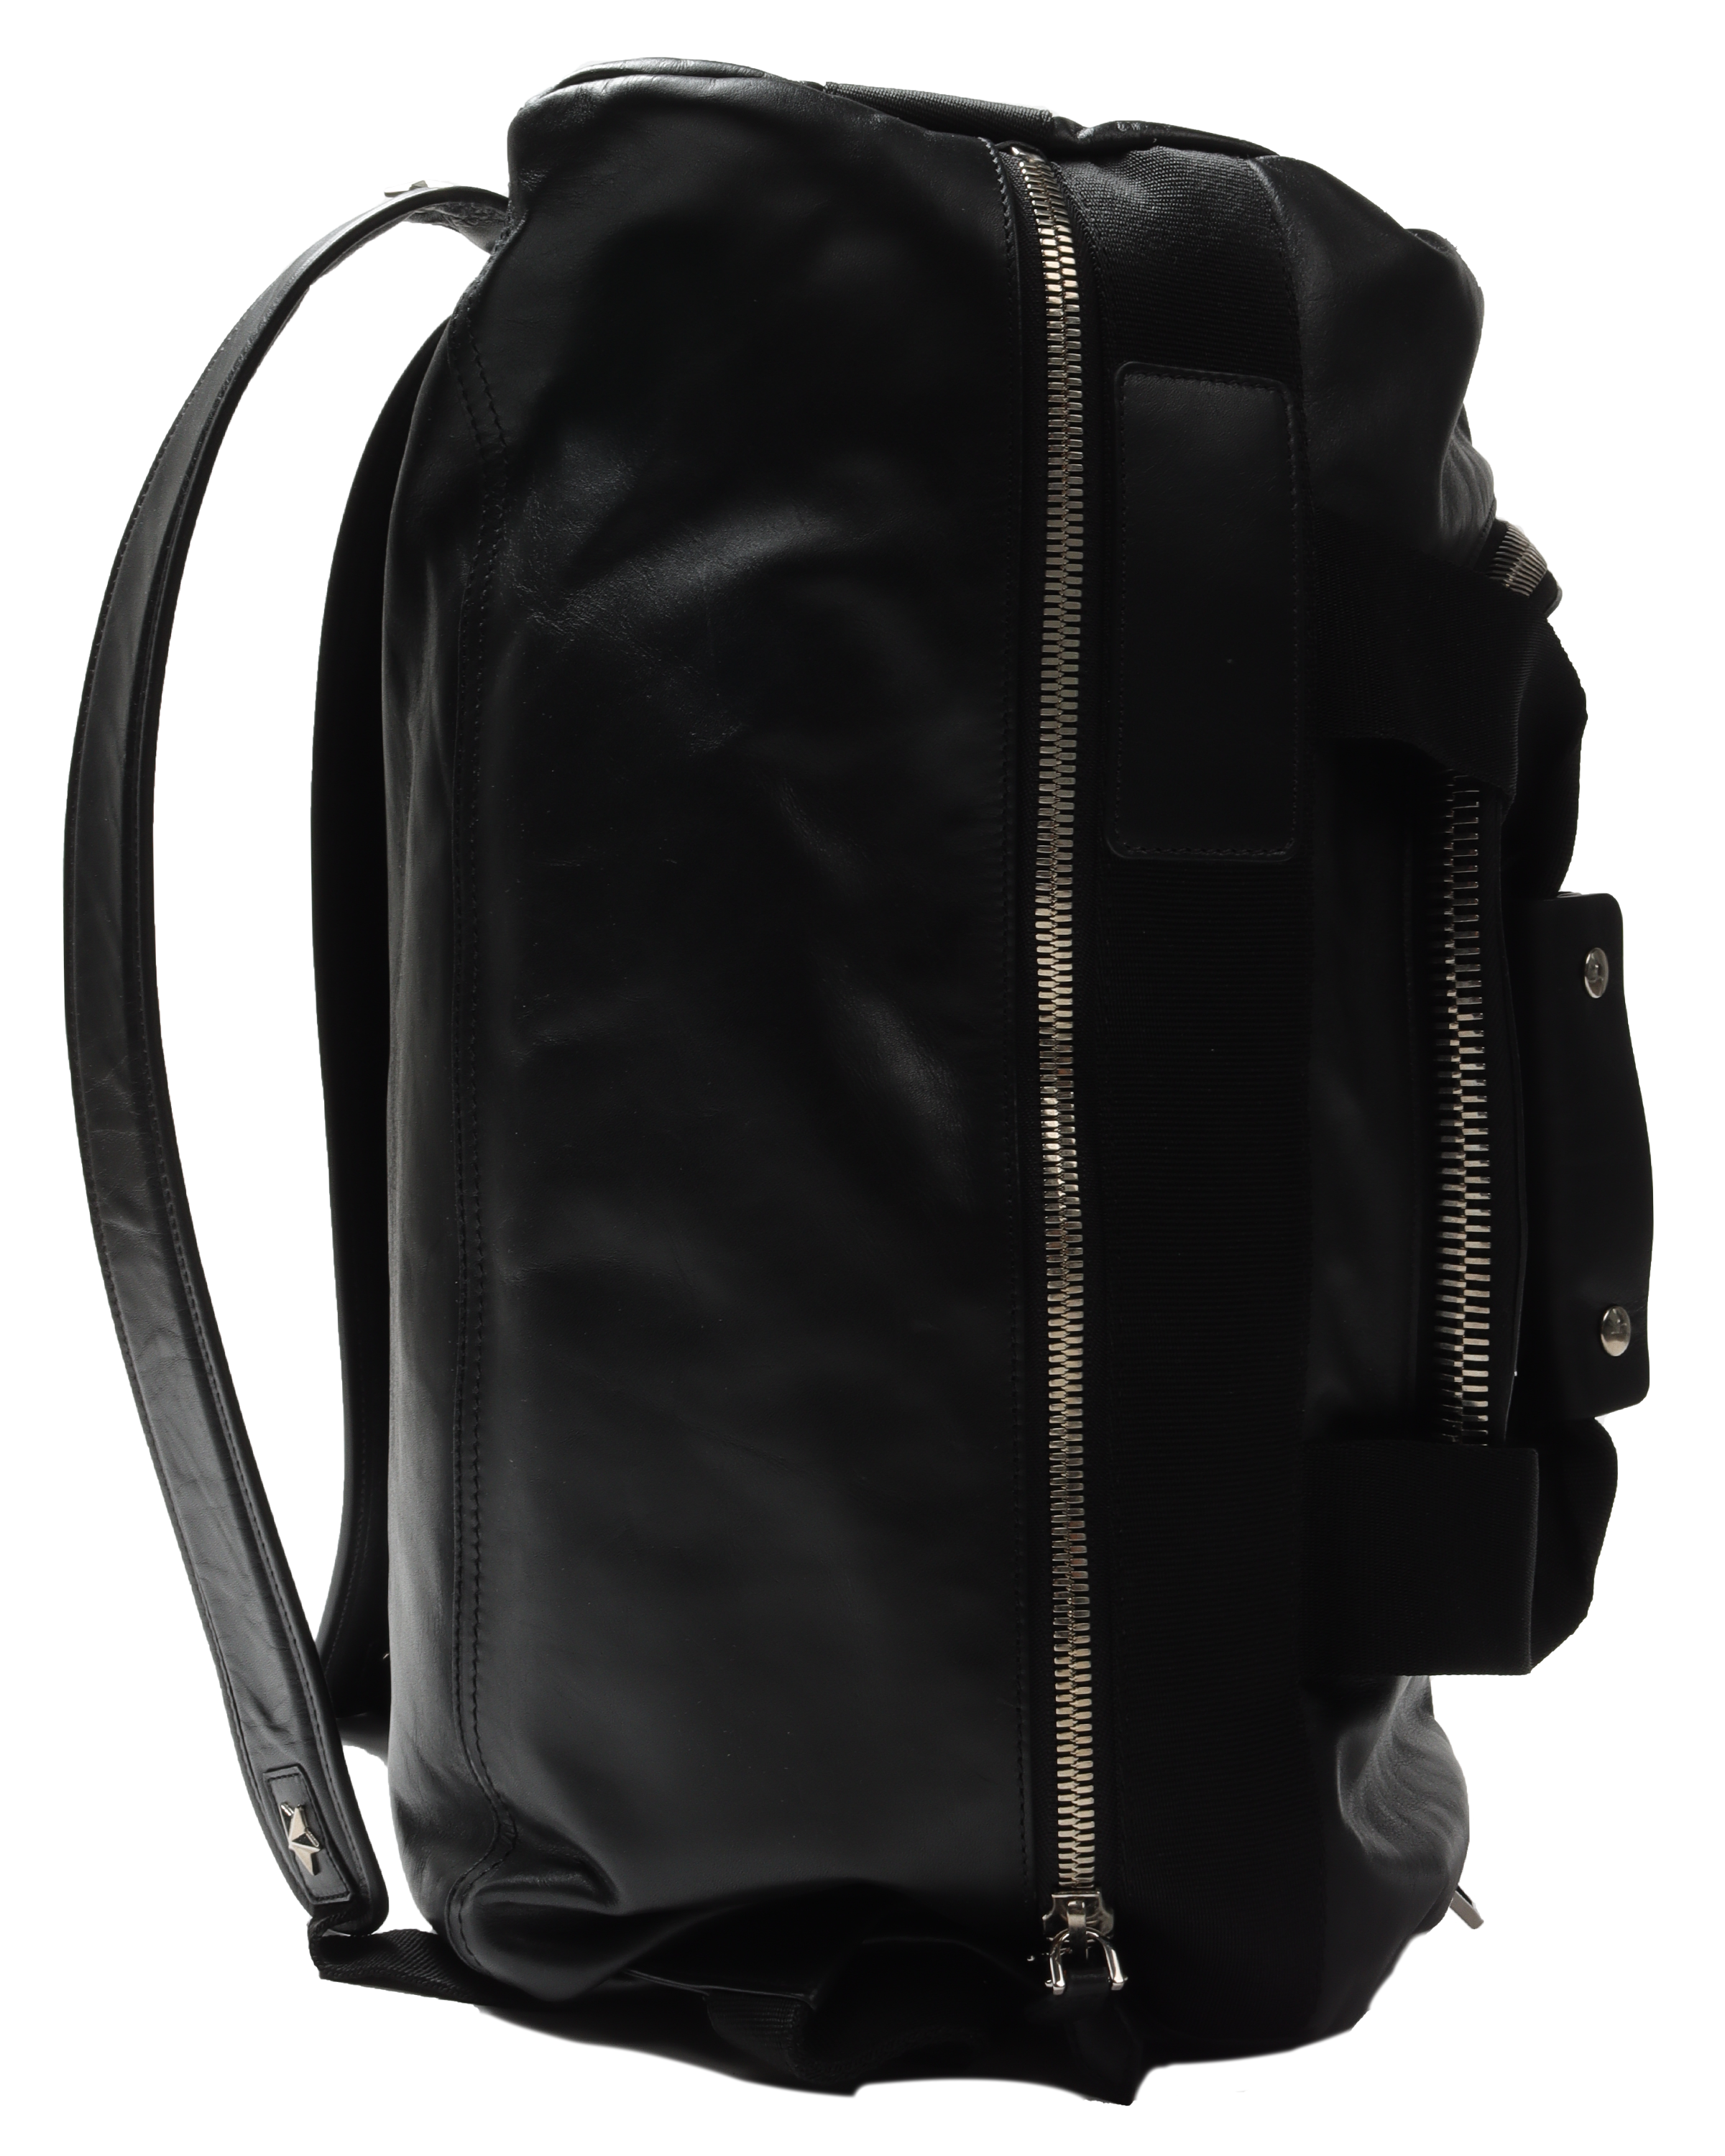 Backpack Duffle Bag